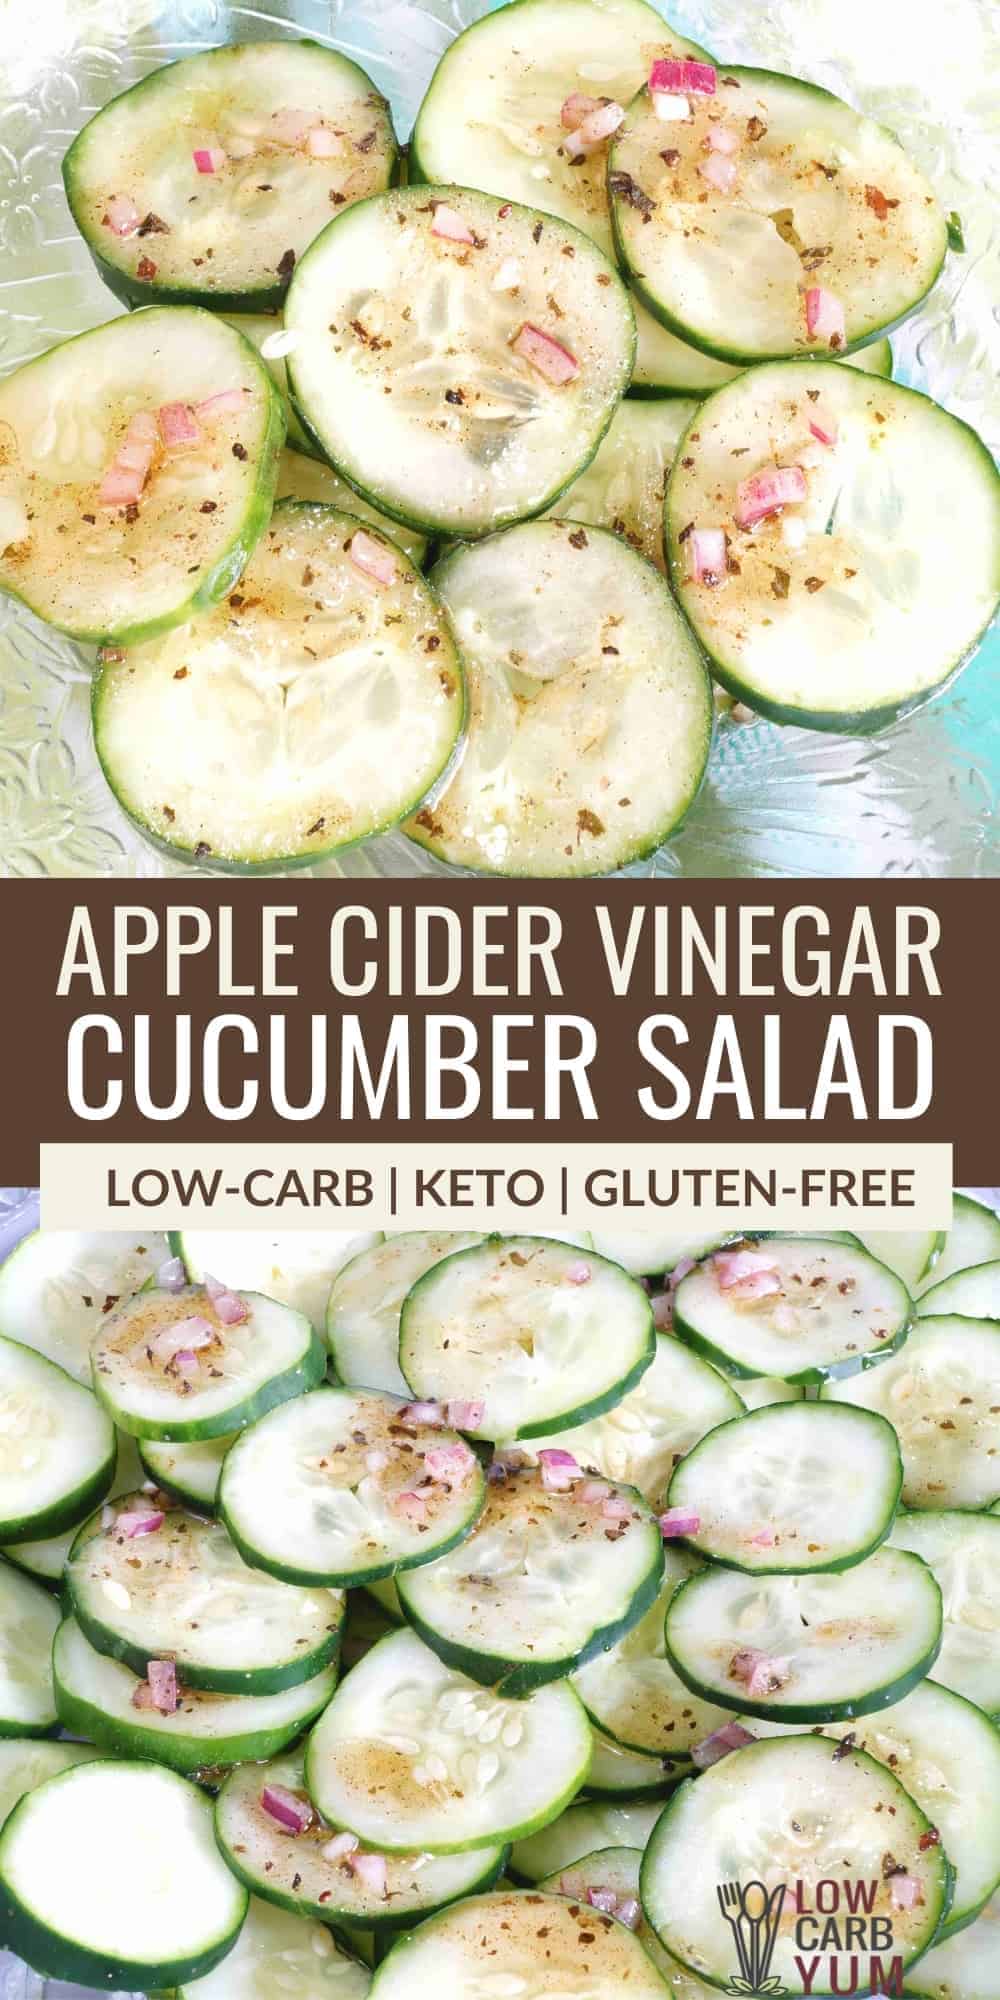 apple cider vinegar cucumber salad pinterest image